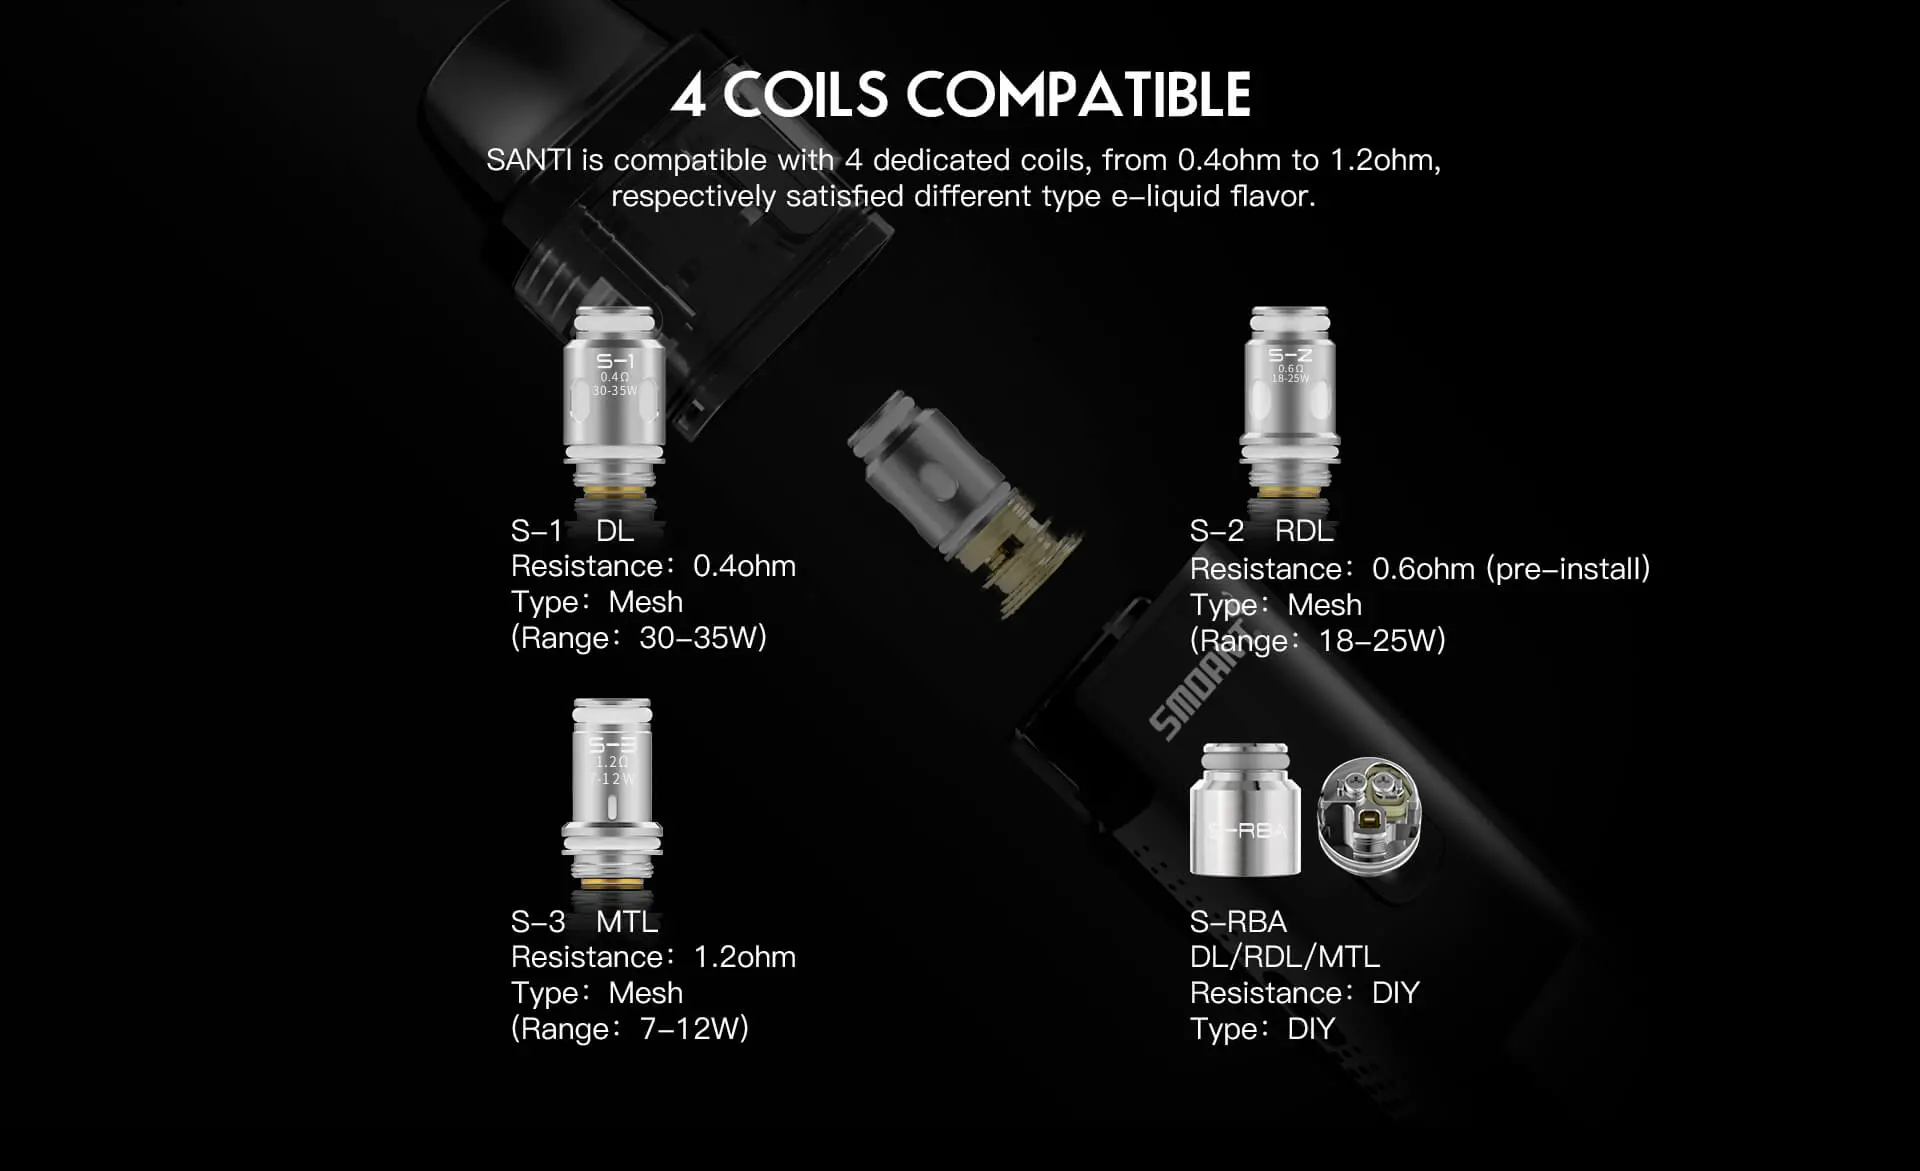 santi 4 coils compatible